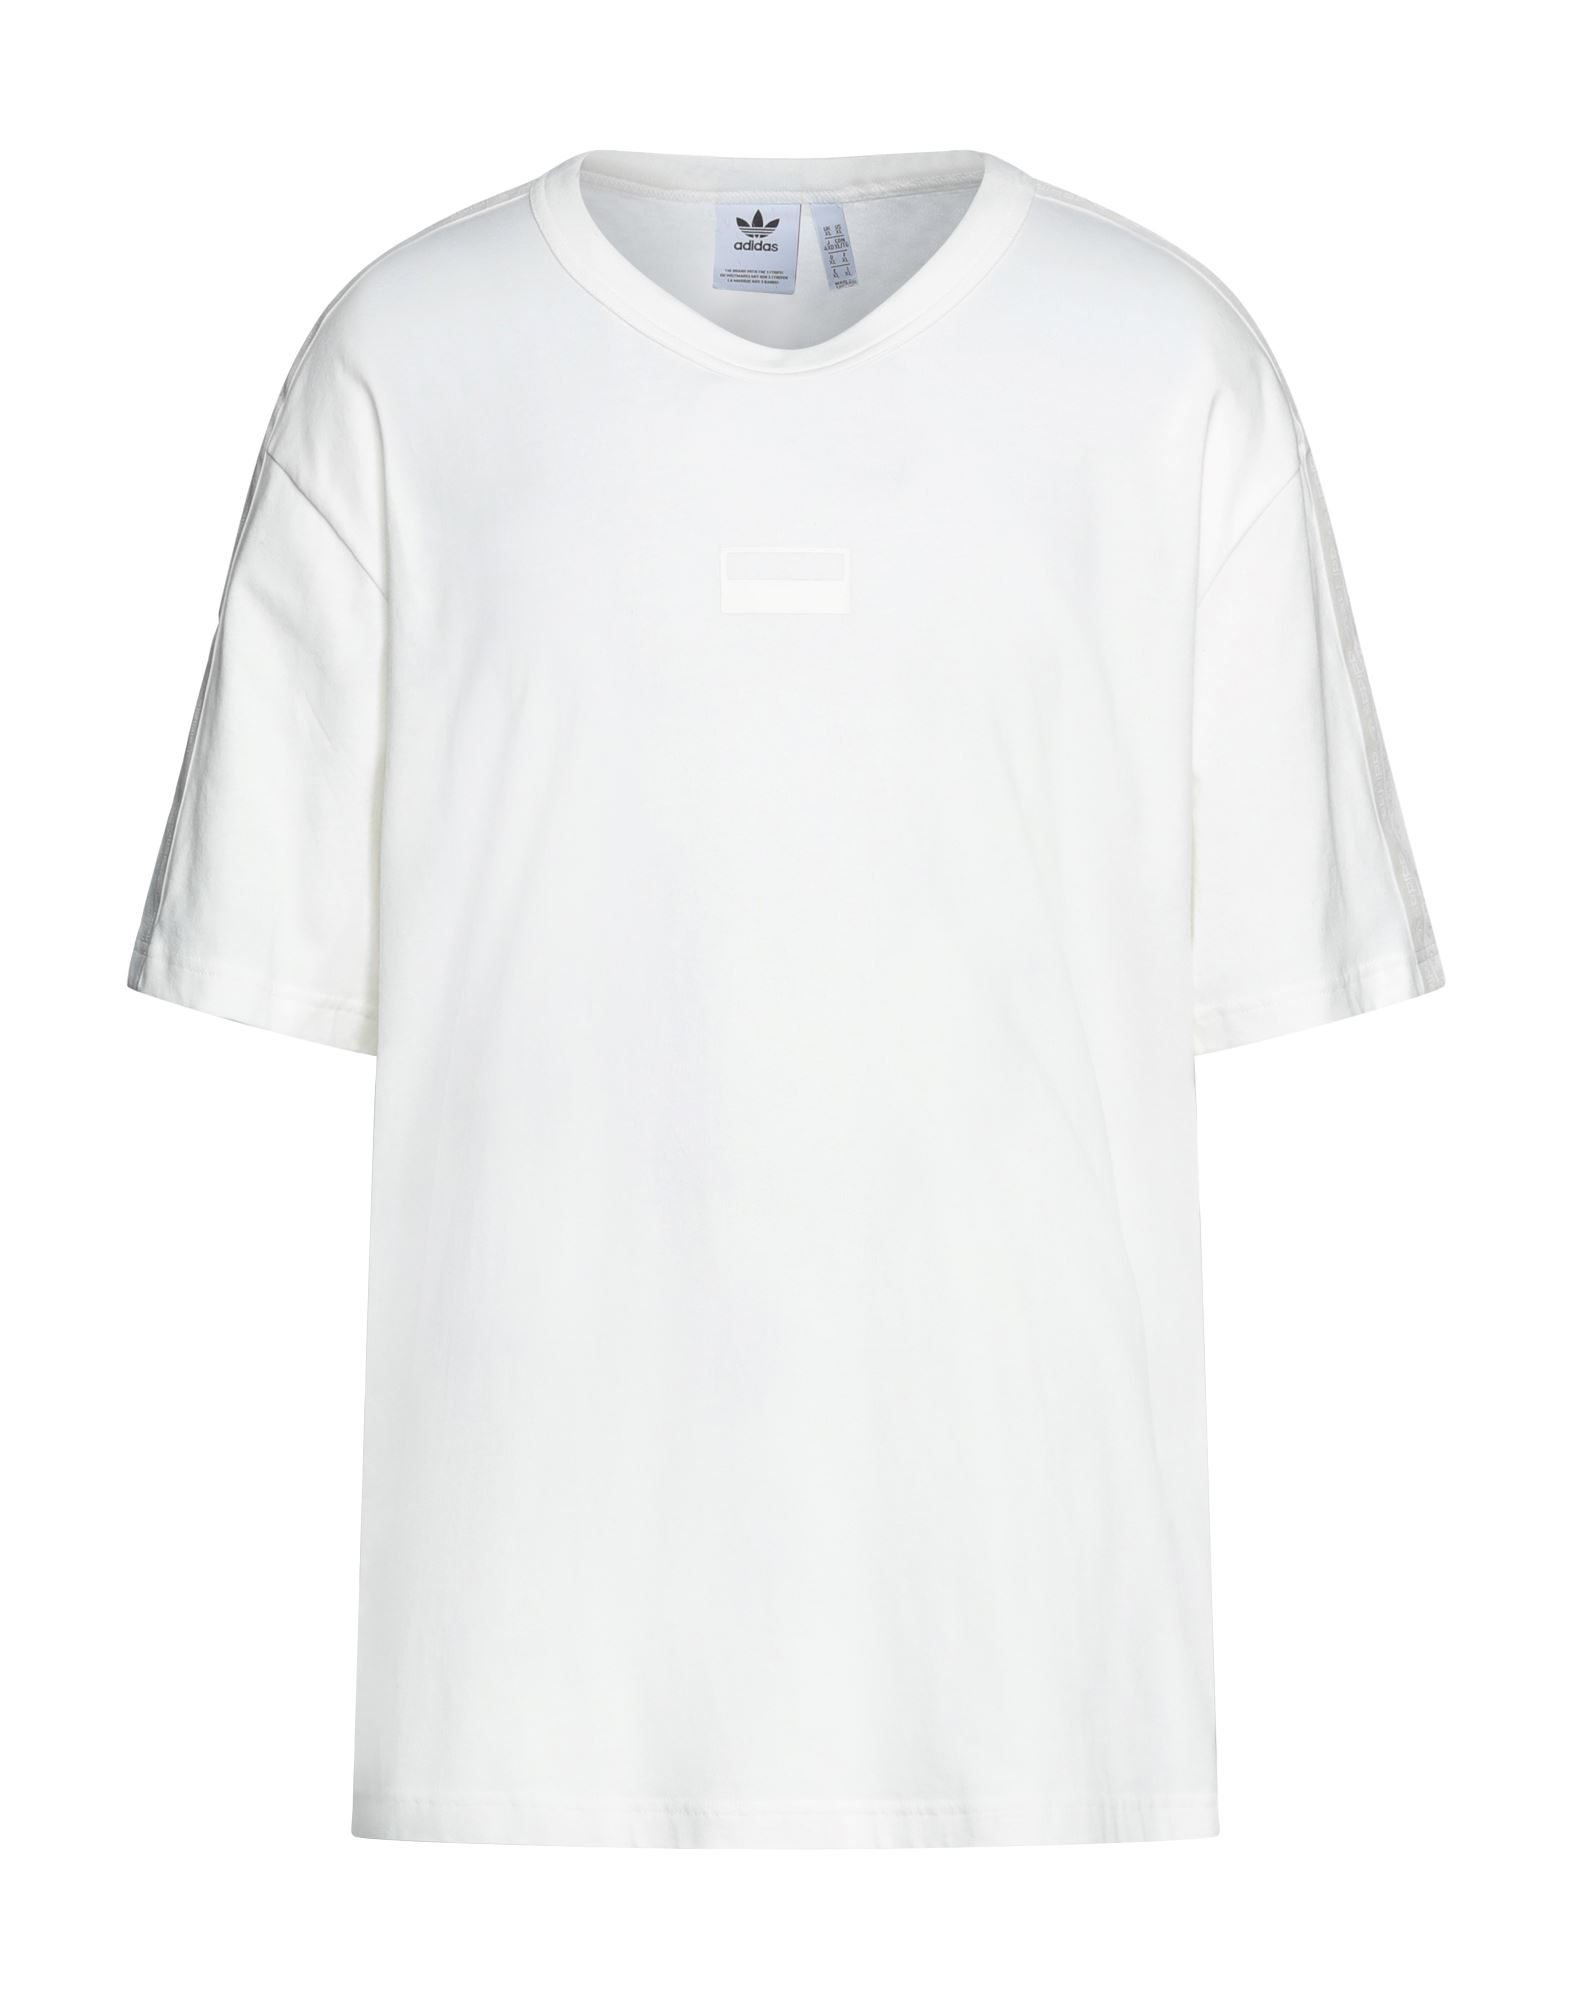 ADIDAS ORIGINALS T-shirts Herren Weiß von ADIDAS ORIGINALS